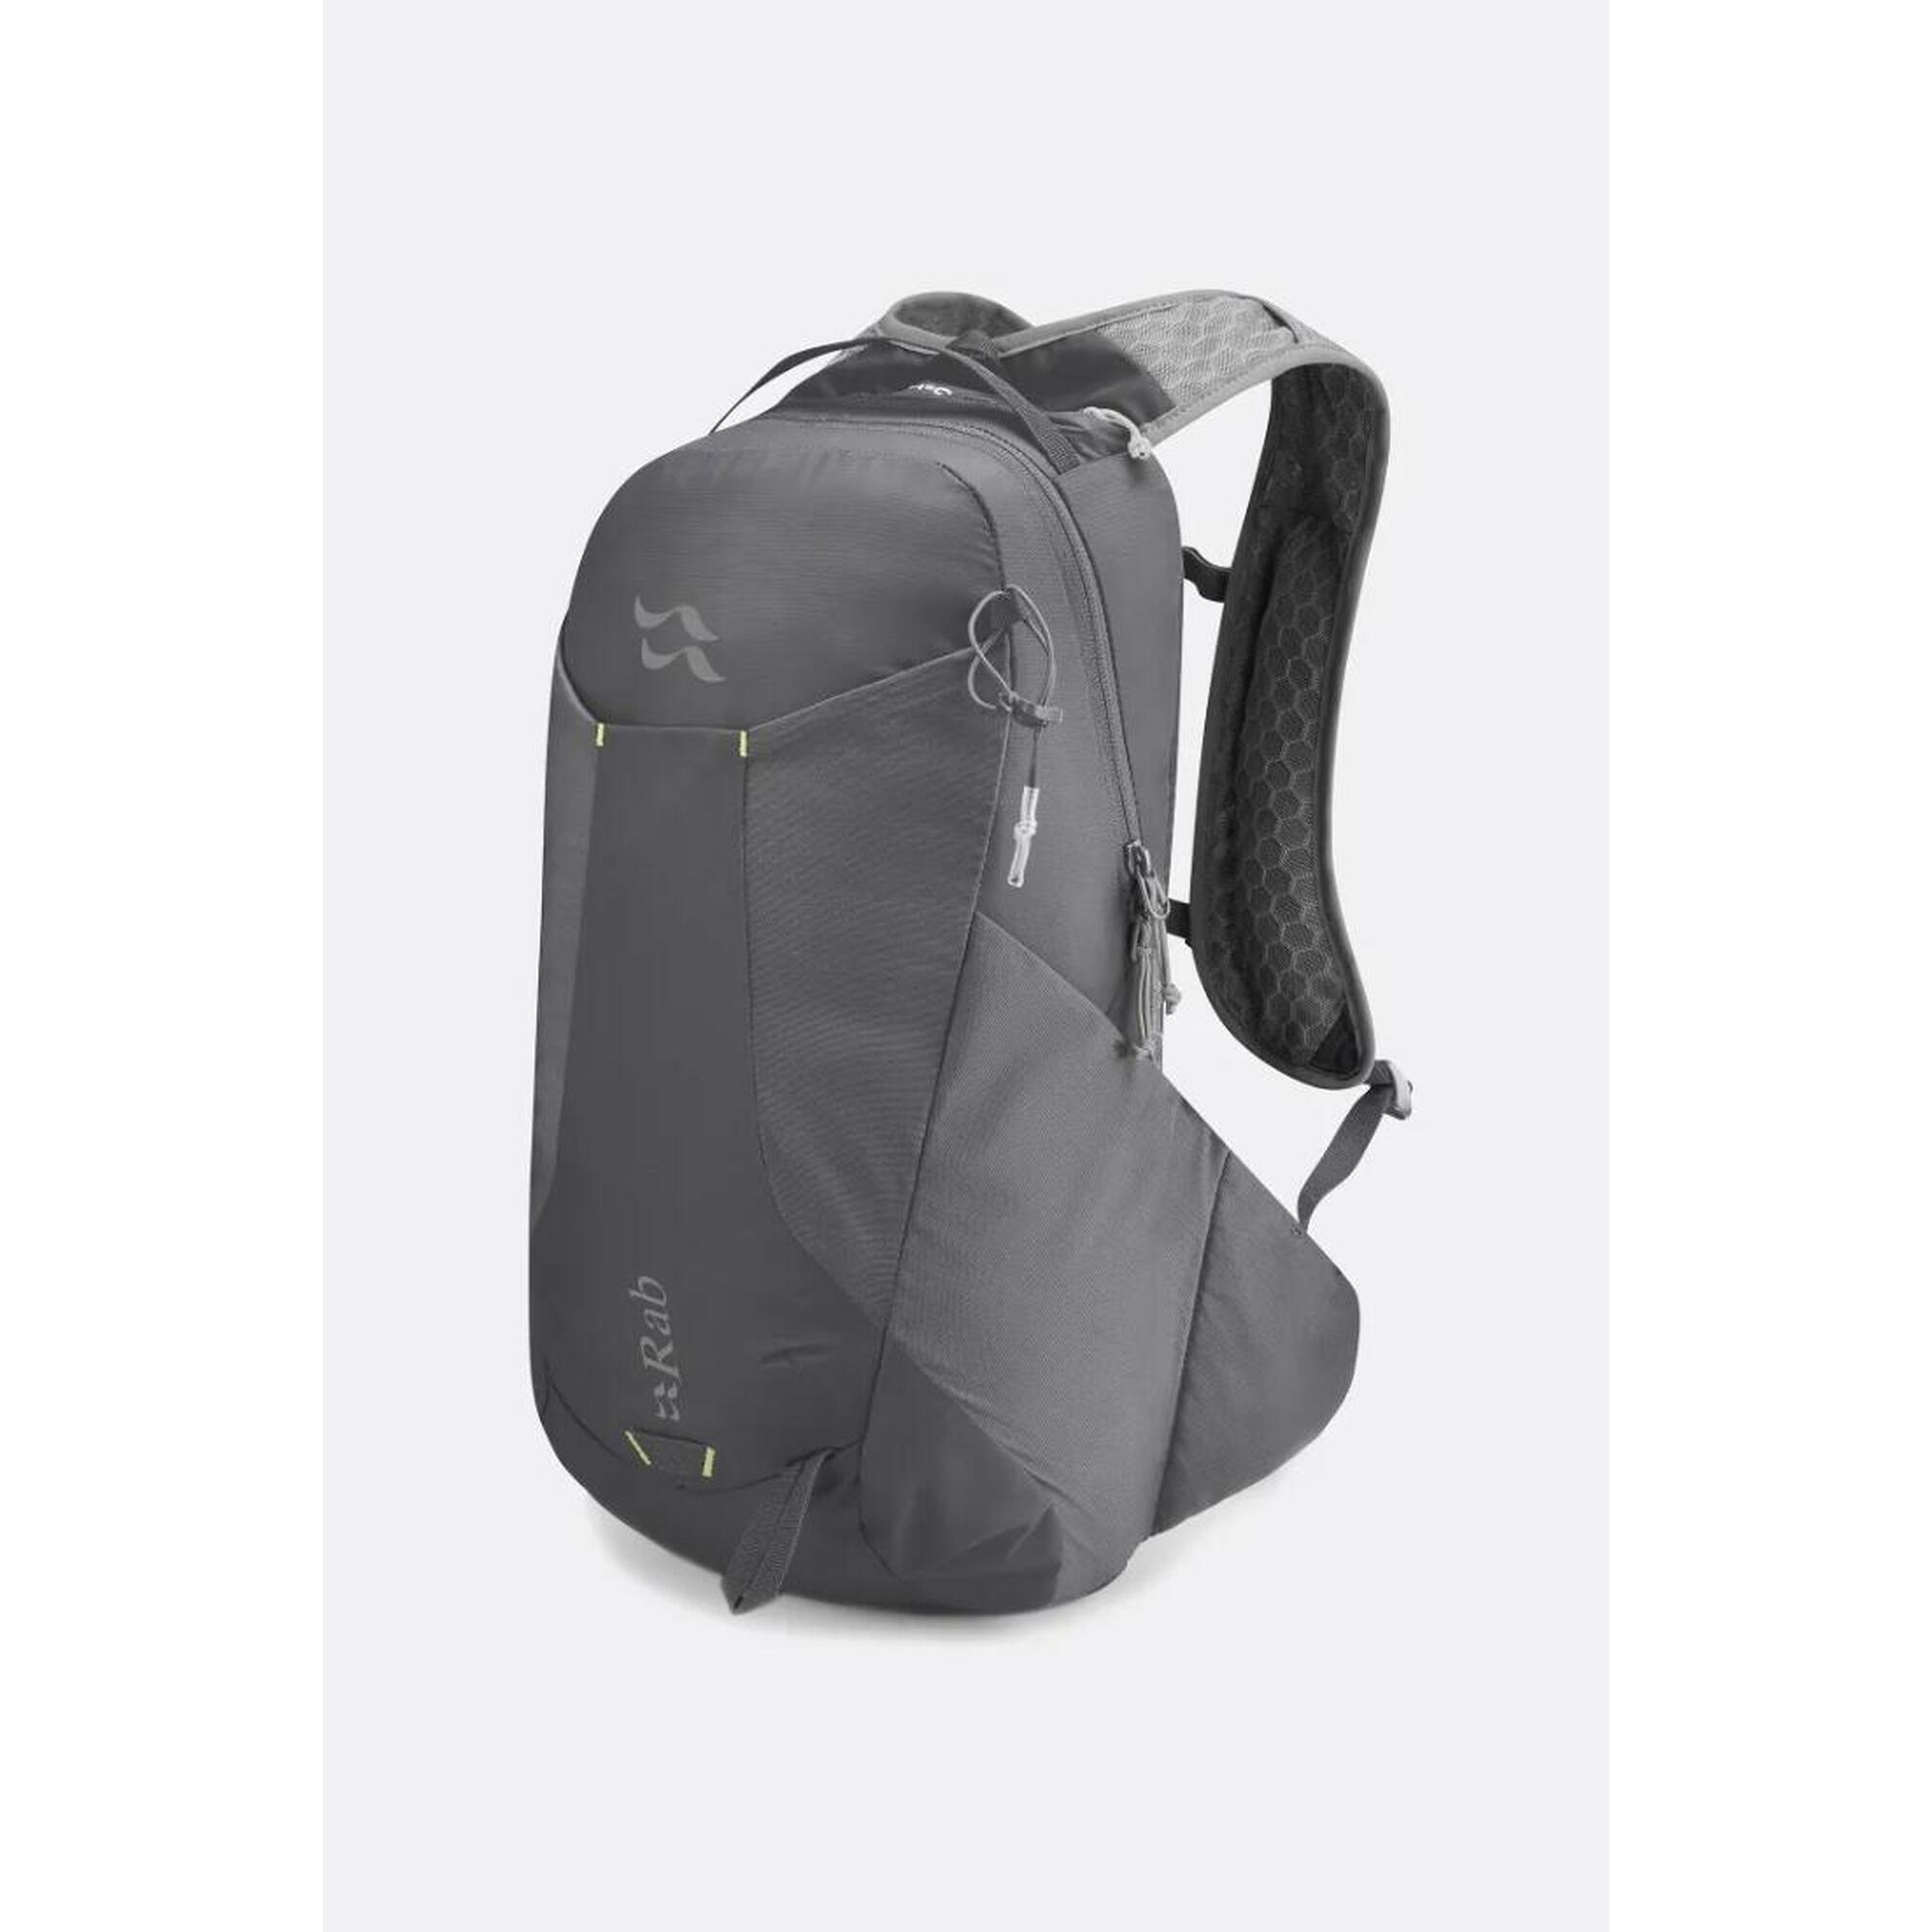 Aeon LT Hiking Backpack 18L - Grey